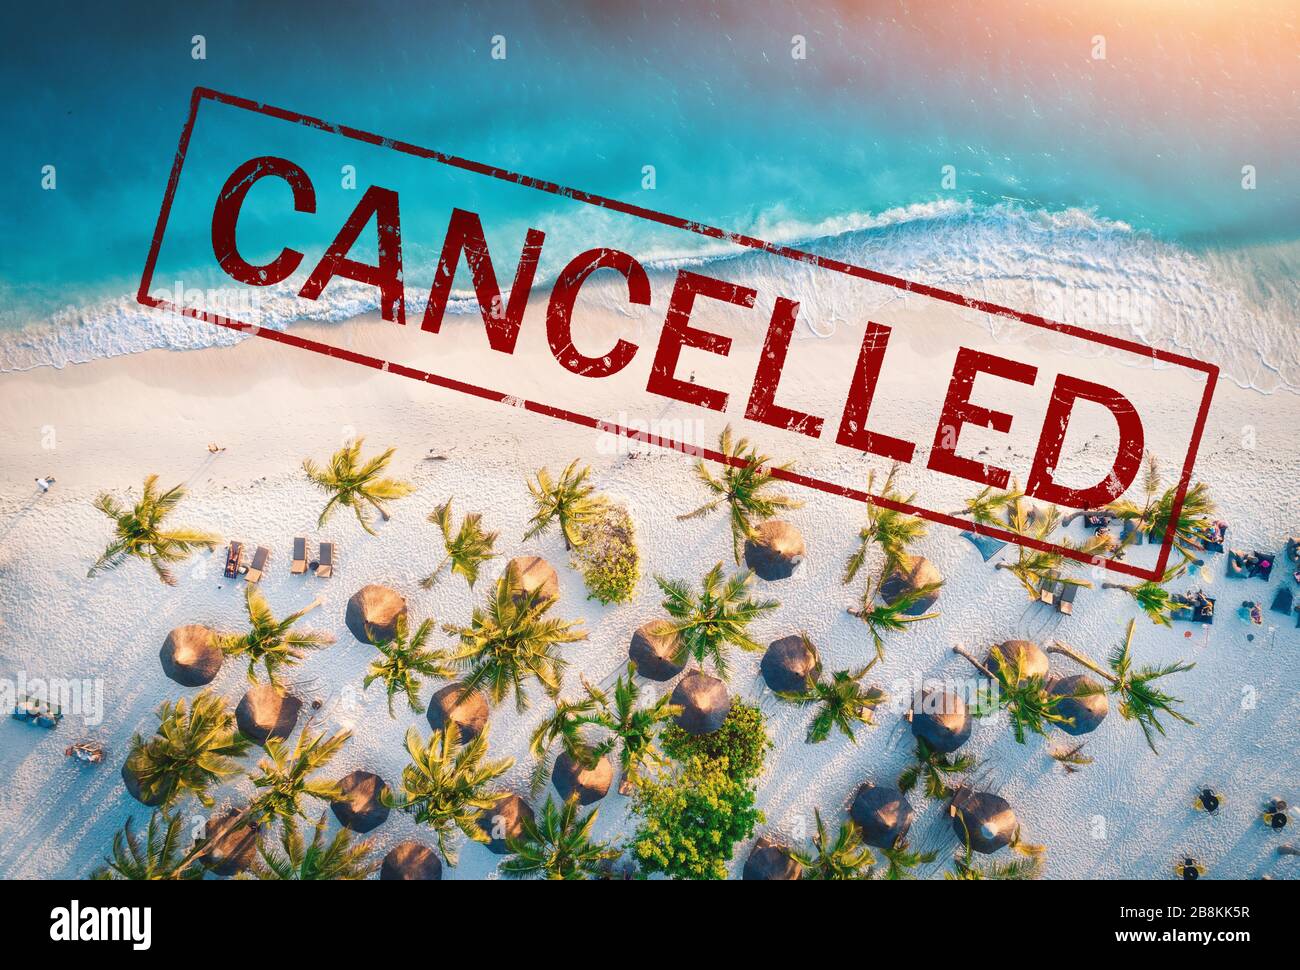 Viajes y vacaciones canceladas debido a la epidemia de coronavirus Foto de stock